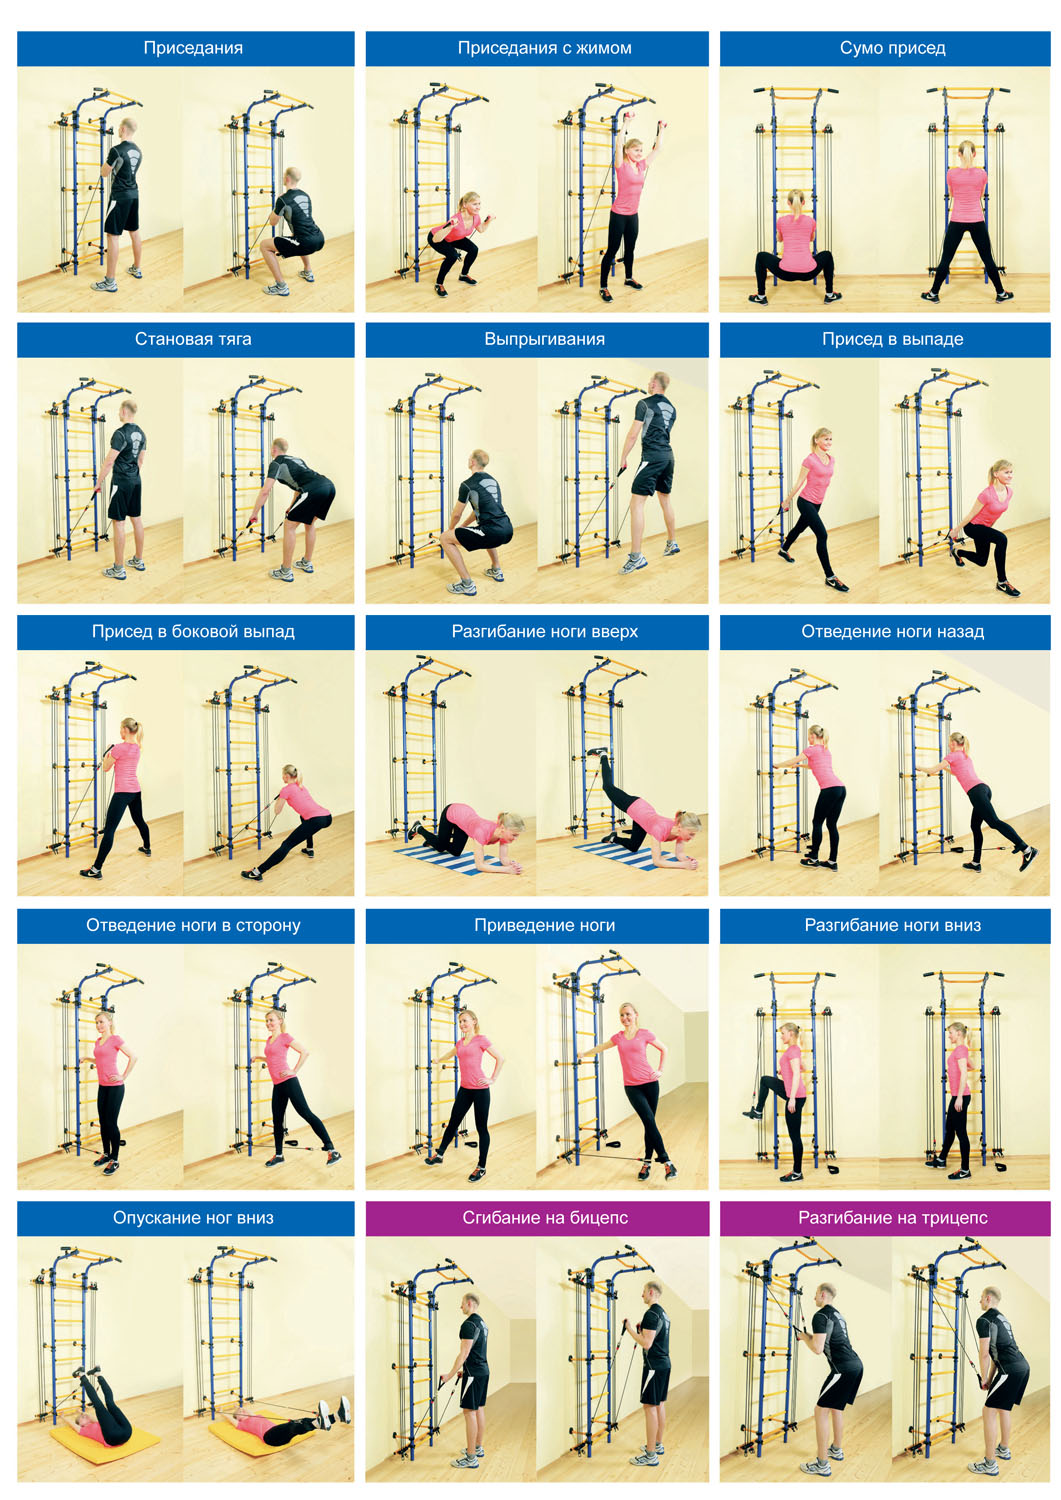 Упражнения на шведской стенке для женщин